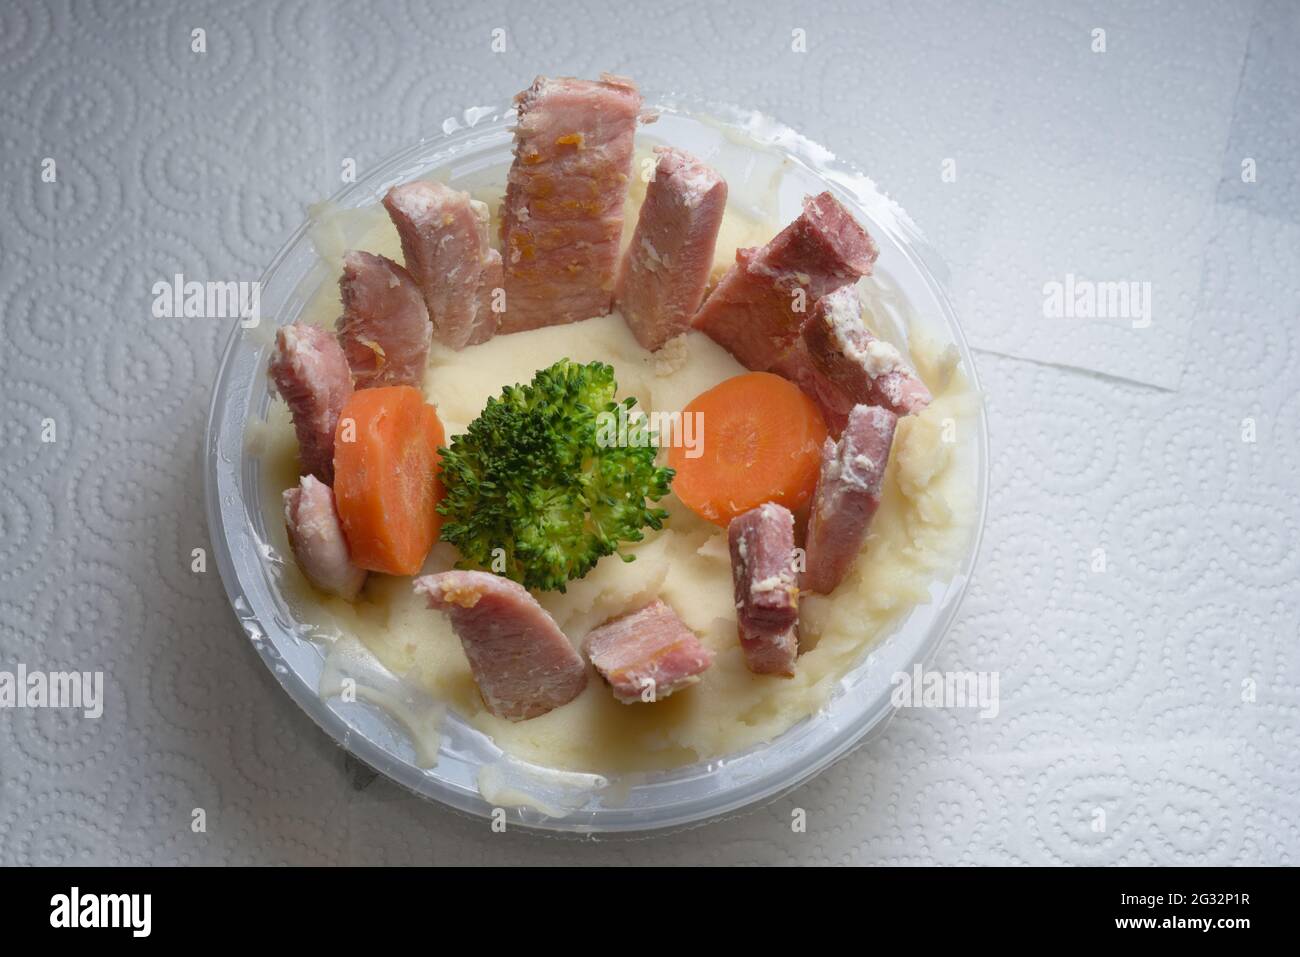 Une baignoire de purée de pommes de terre sur le rouleau de cuisine blanc. Présentation inhabituelle de viande et de légumes. Un repas préparé au supermarché fait maison Banque D'Images